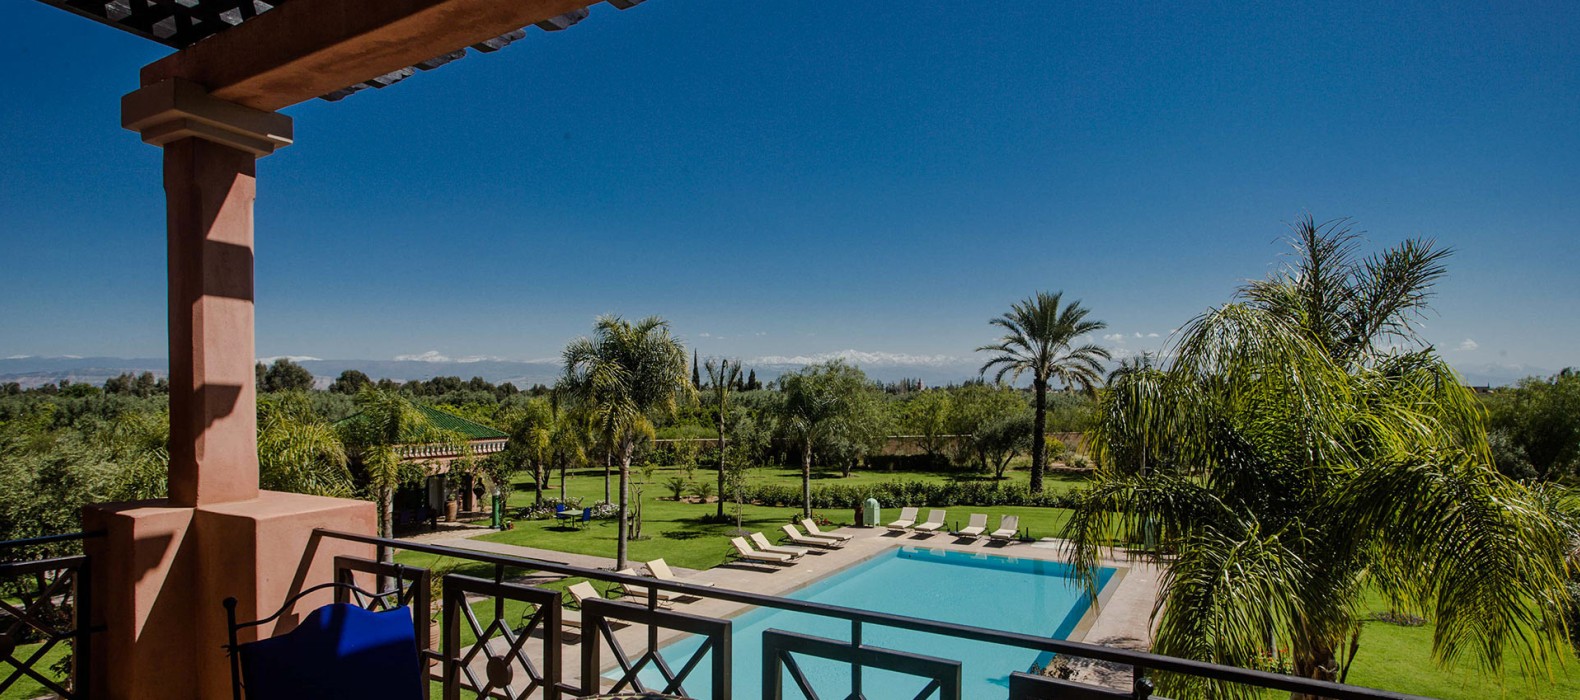 Landscape view of Villa Rosalie in Marrakech